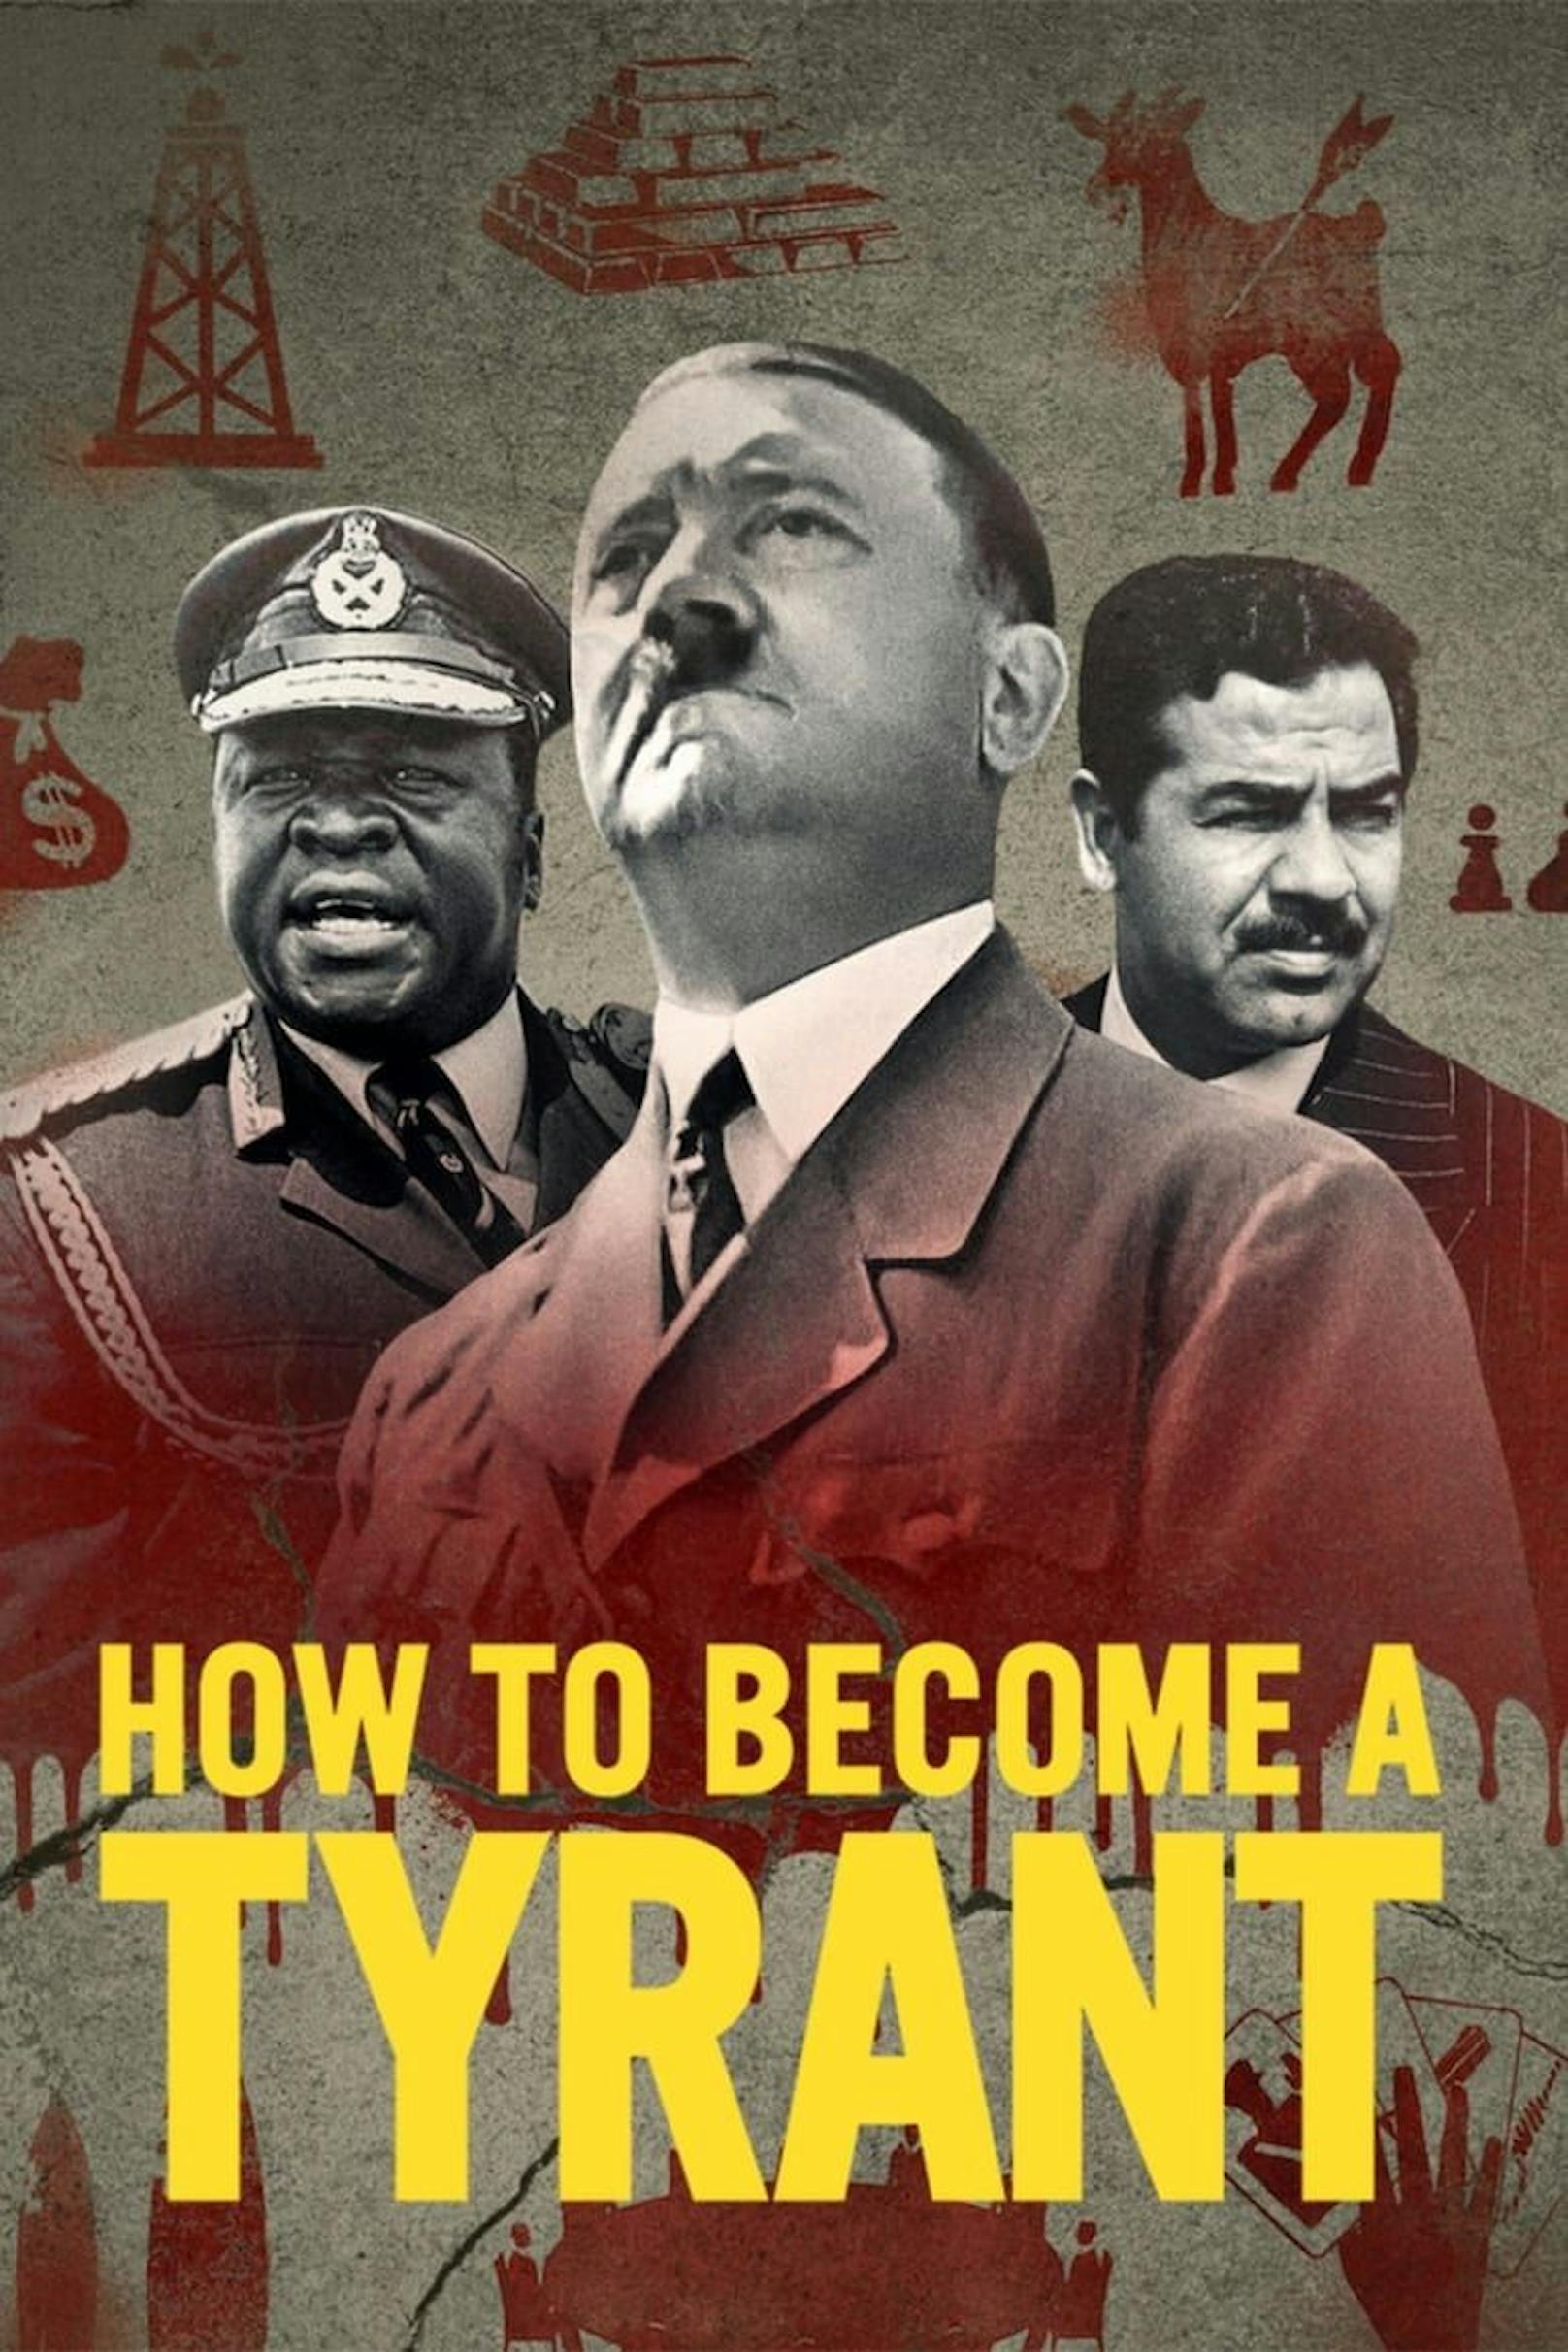 <strong>"How To Become A Tyrant" auf Netflix:</strong> Eine Dokuserie, die sich mit dem Aufstieg und dem Machterhalt verschiedener Diktatoren beschäftigt.